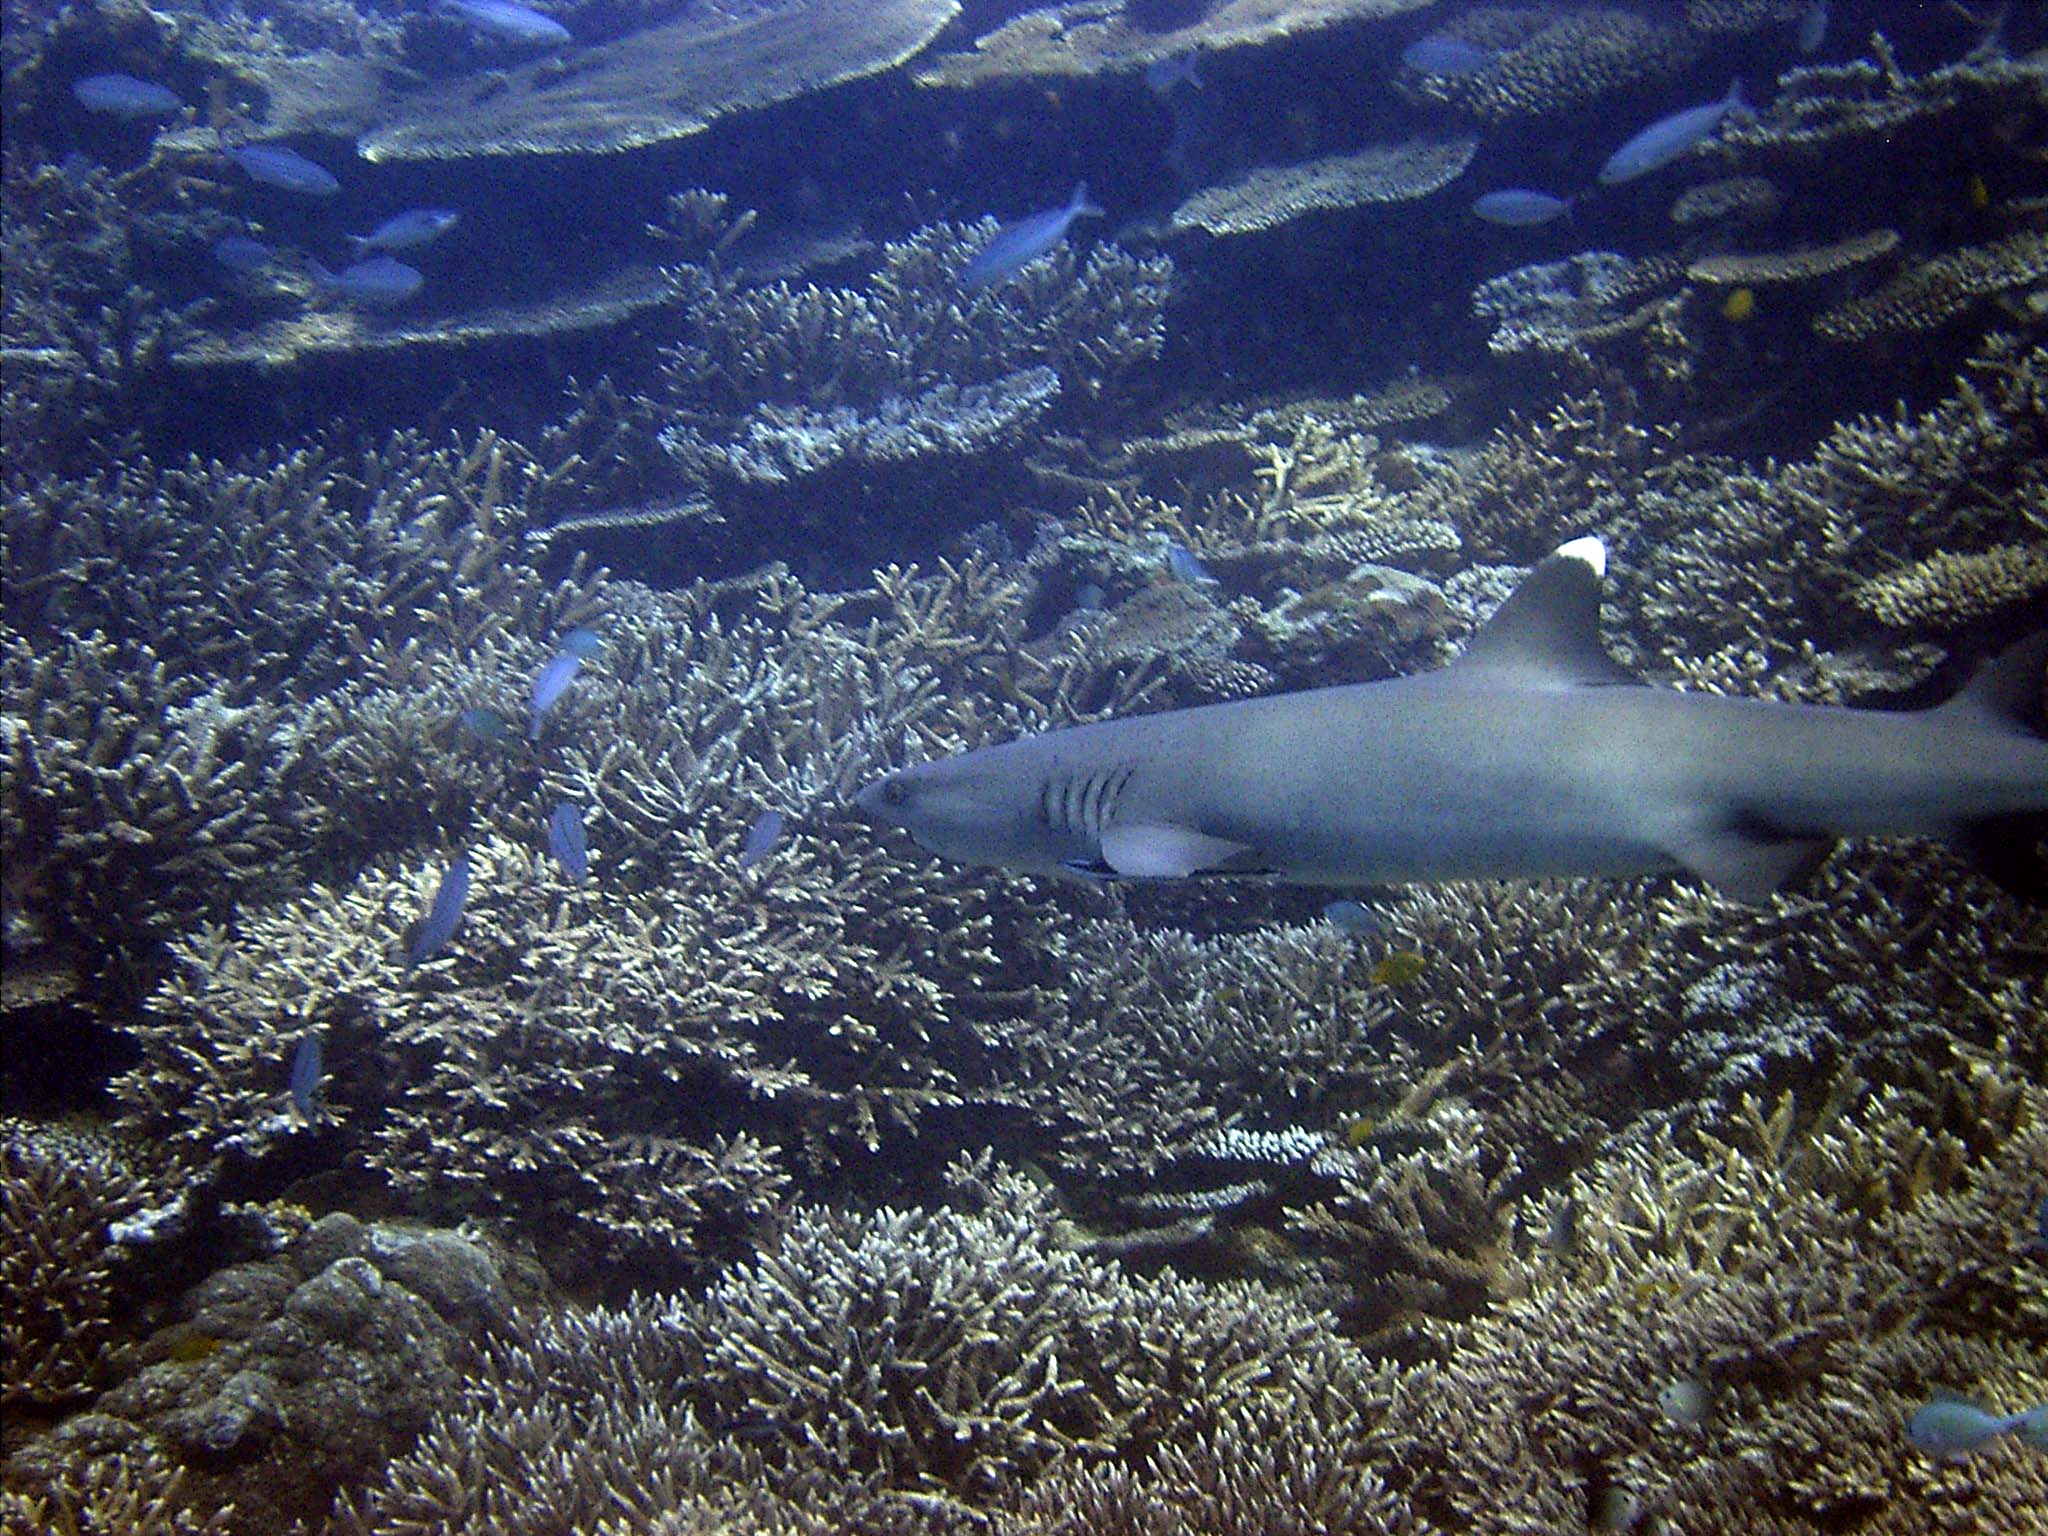 White tip Reef shark